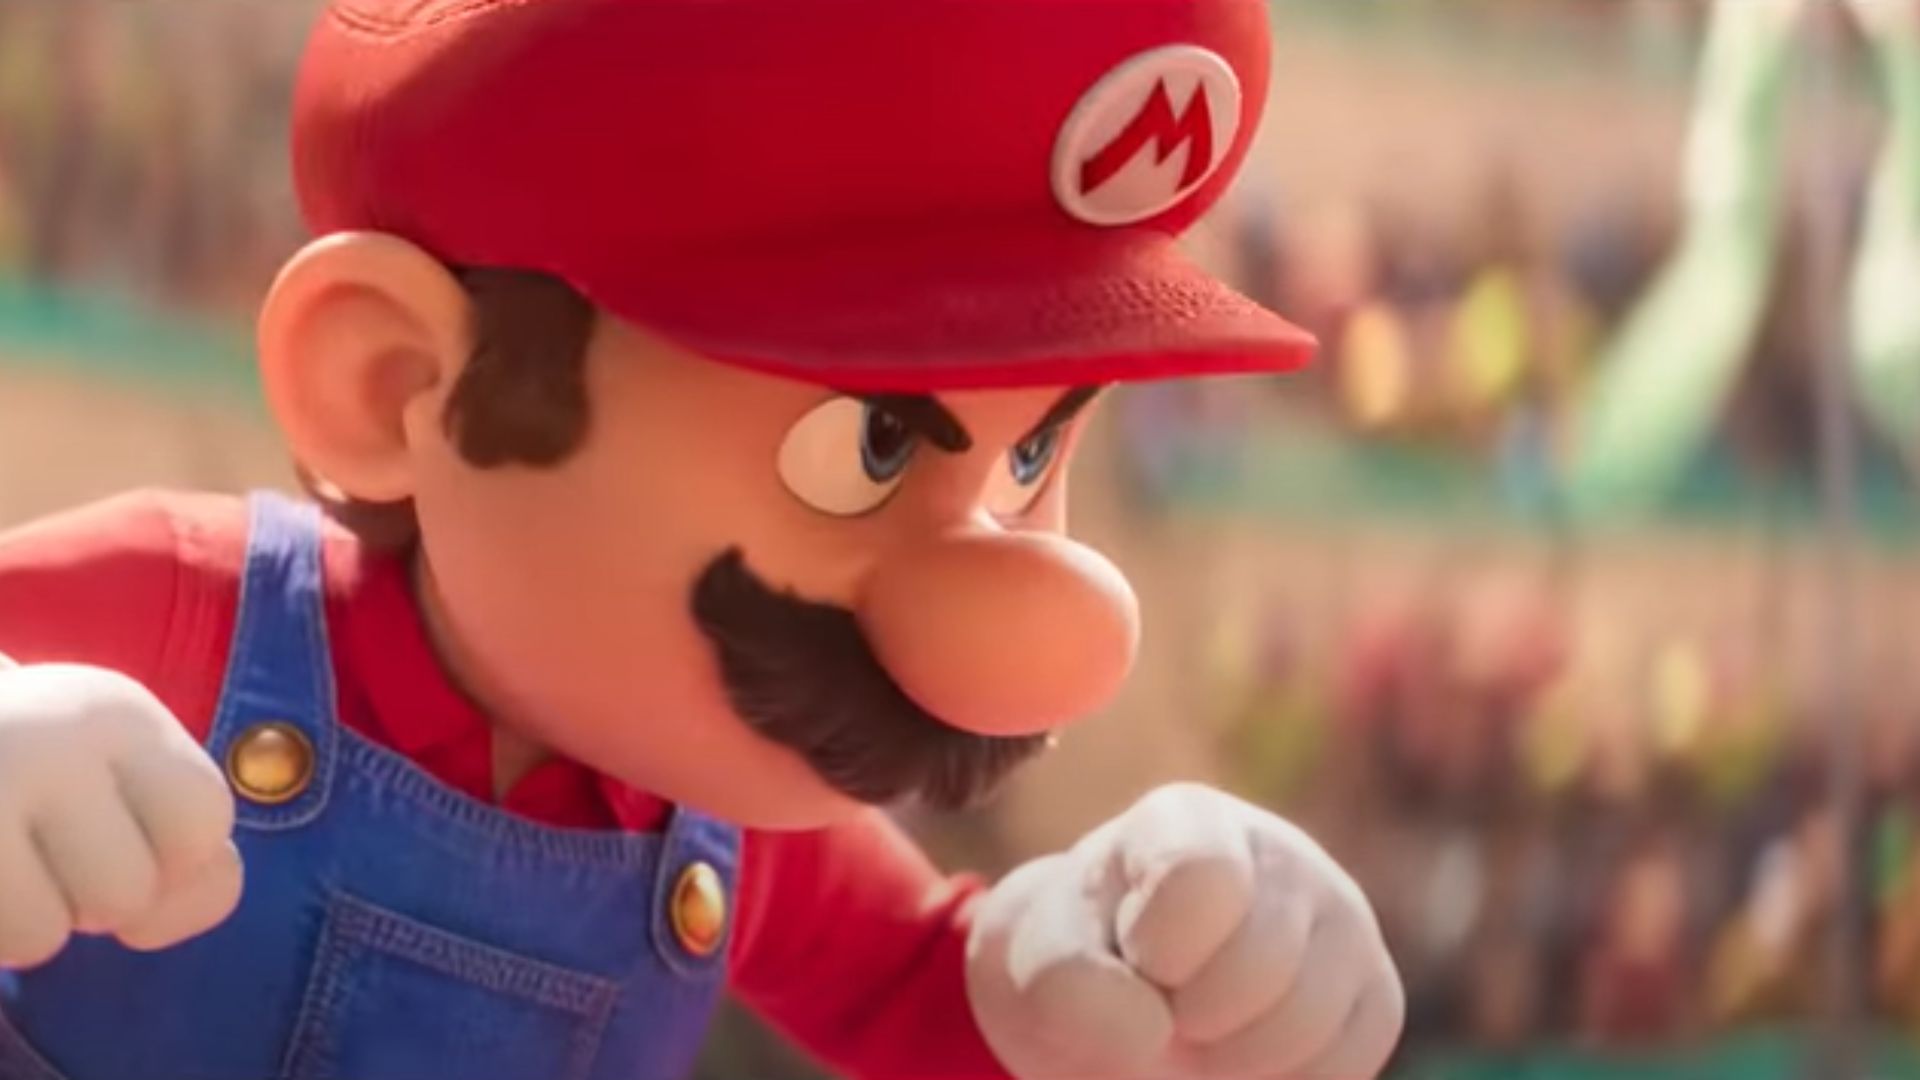 Super Mario Bros.' é 5º filme desde início da pandemia a arrecadar US$ 1  bilhão; veja o trailer - Verso - Diário do Nordeste